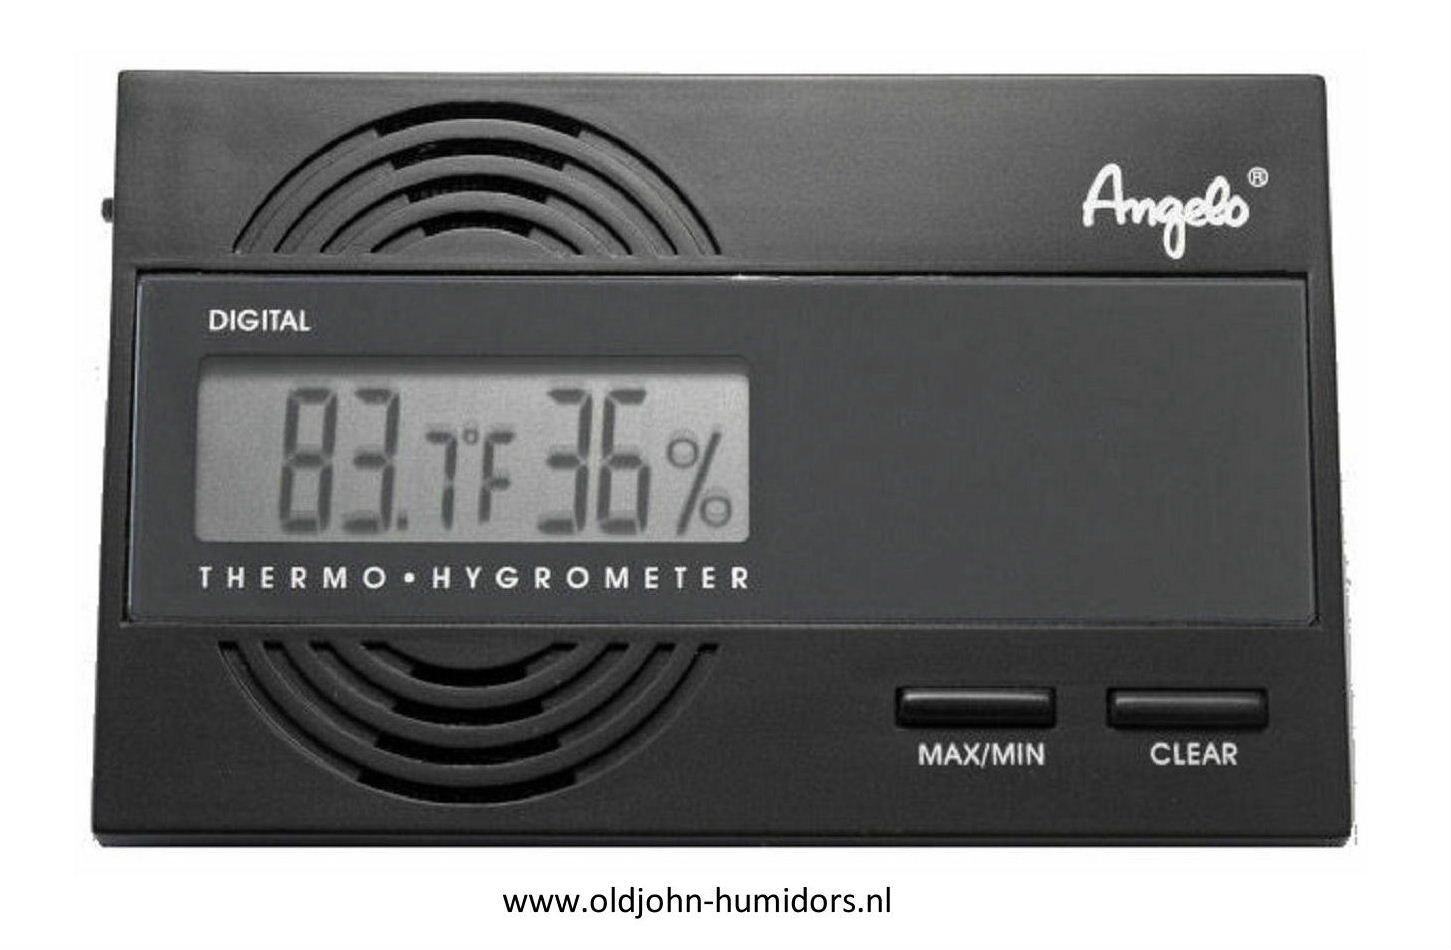 digitale hygrometer Angelo